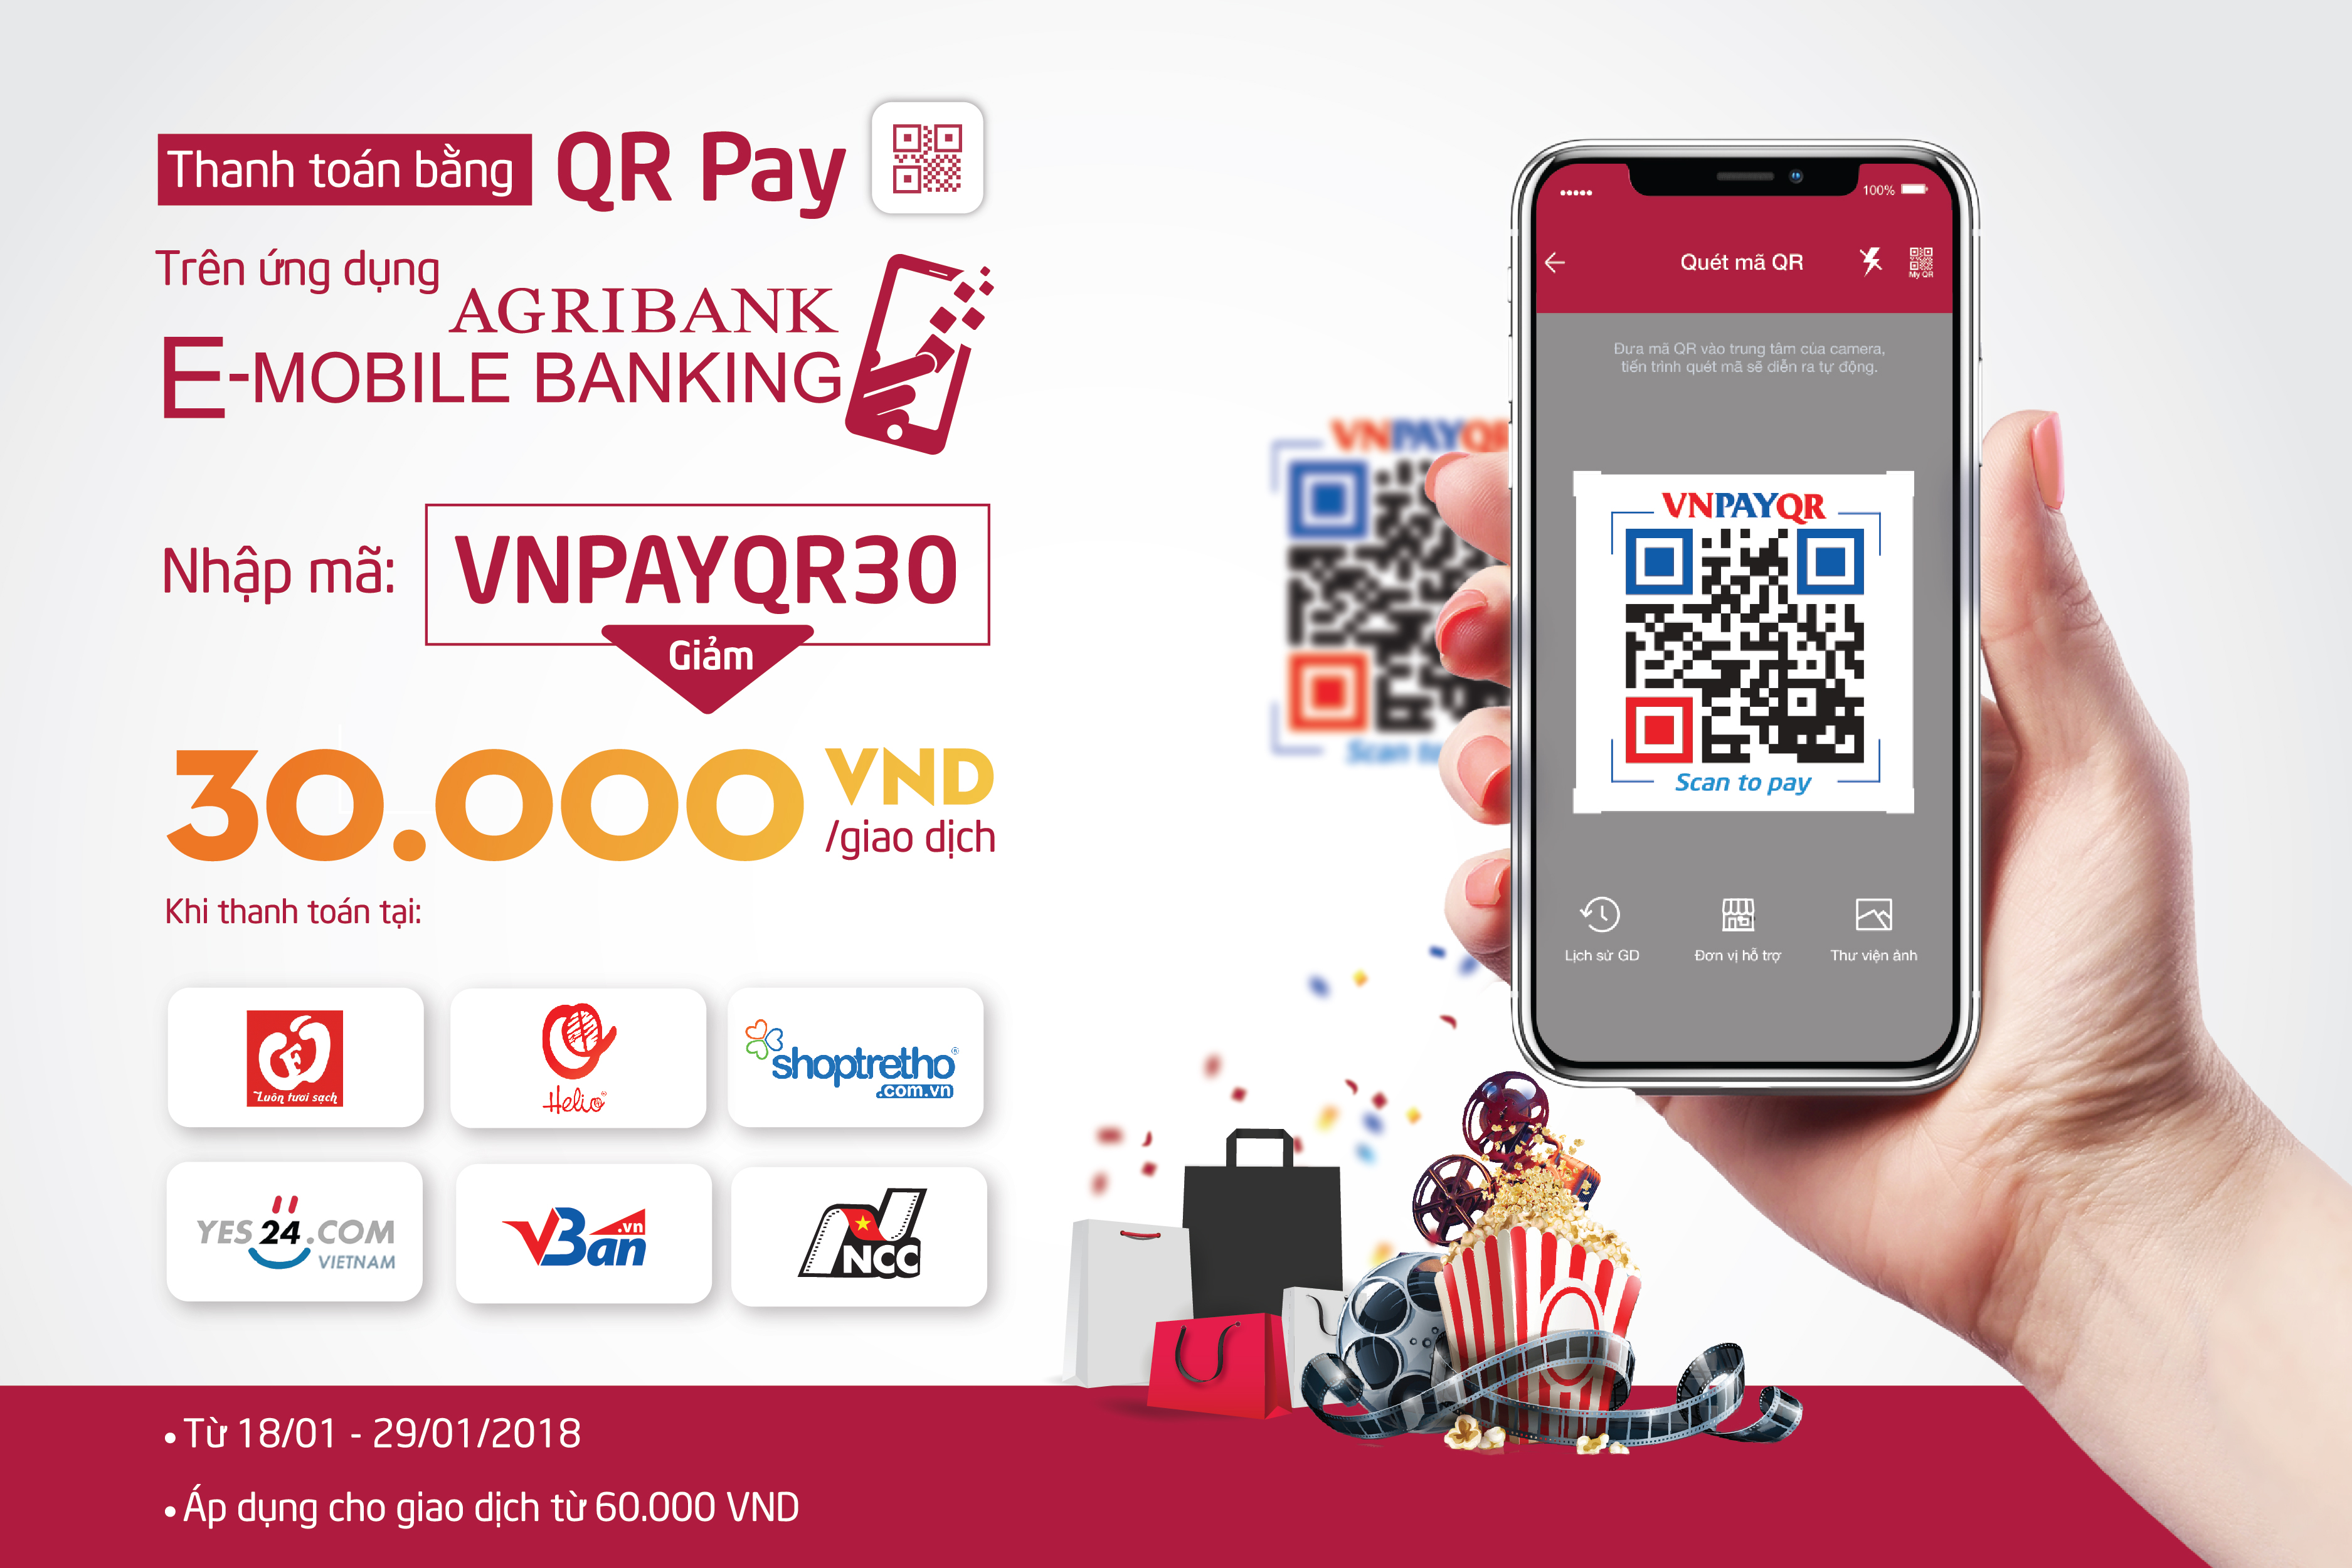 Tặng ngay 30,000 VND/ giao dịch khi thanh toán bằng QR Pay trên ứng dụng Agribank E-Mobile Banking